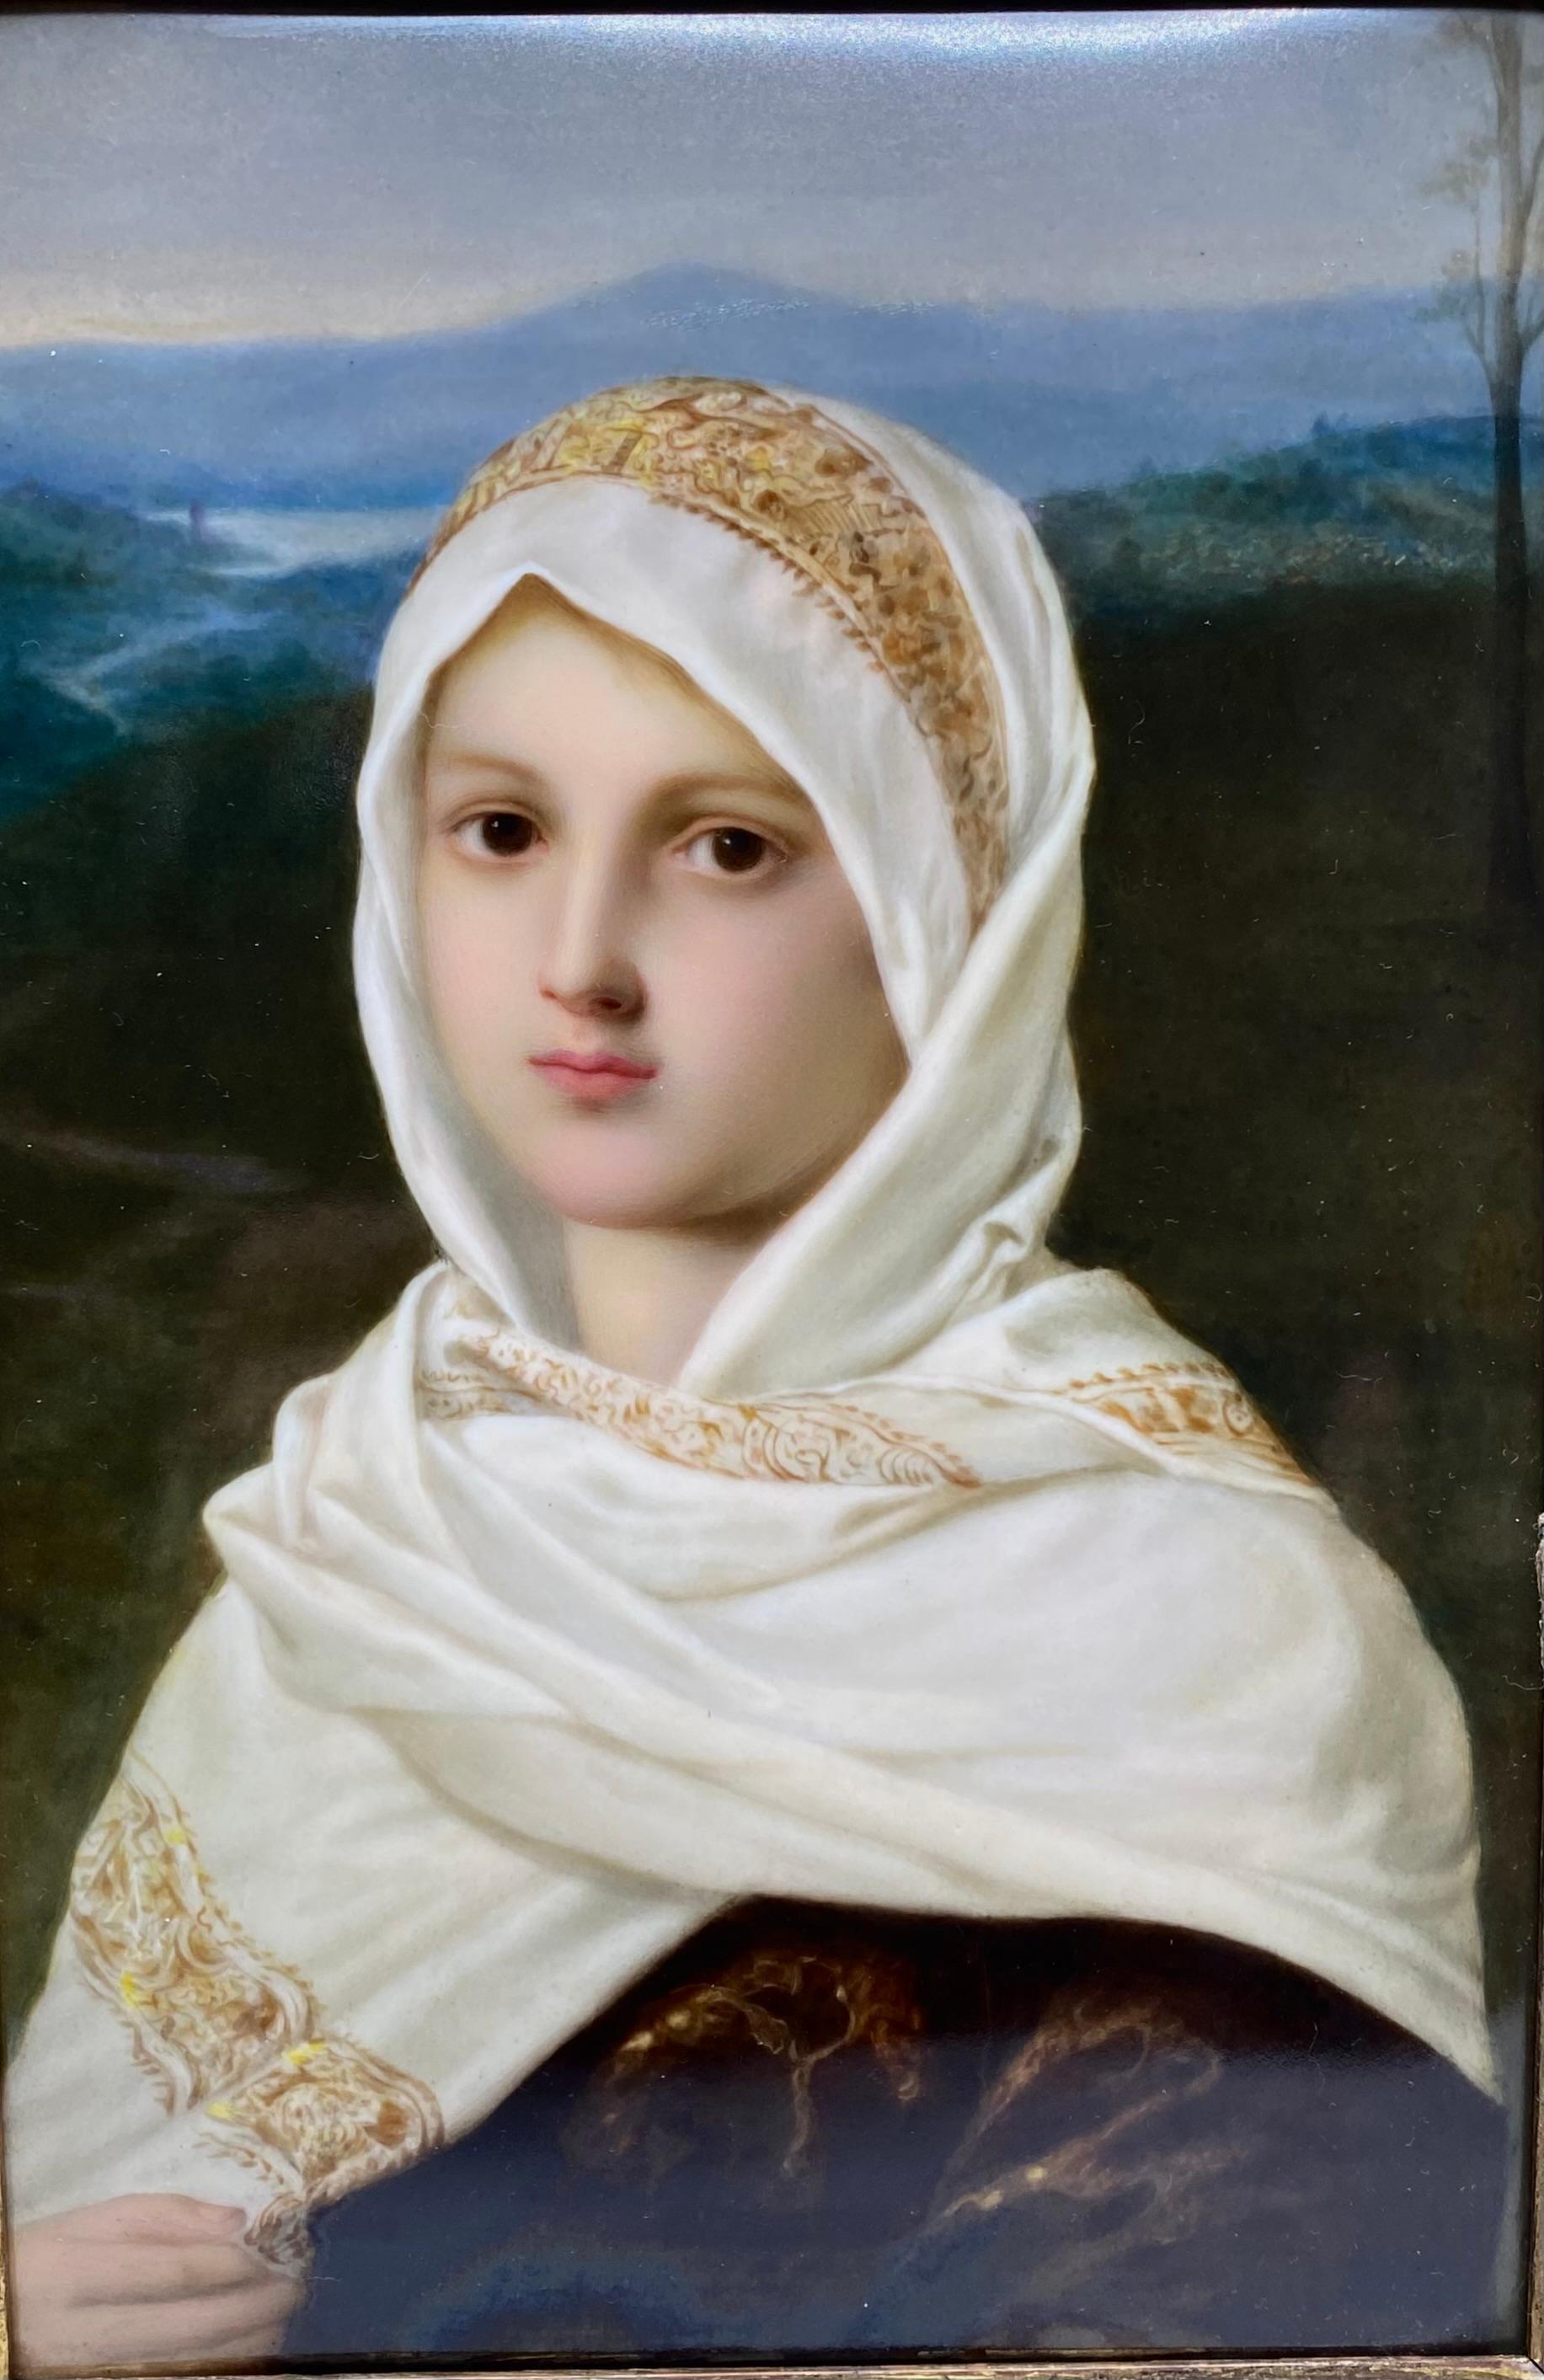 Feine K.P.M. Berliner Porzellanplakette, nach Friedrich August von Kaulbach, um 1860. Schön gemalt, im Renaissance-Stil, mit einem jungen Mädchen in einer italienischen Flusslandschaft. Sie trägt ein seidenes, mit Goldfäden besticktes Tuch, das sie